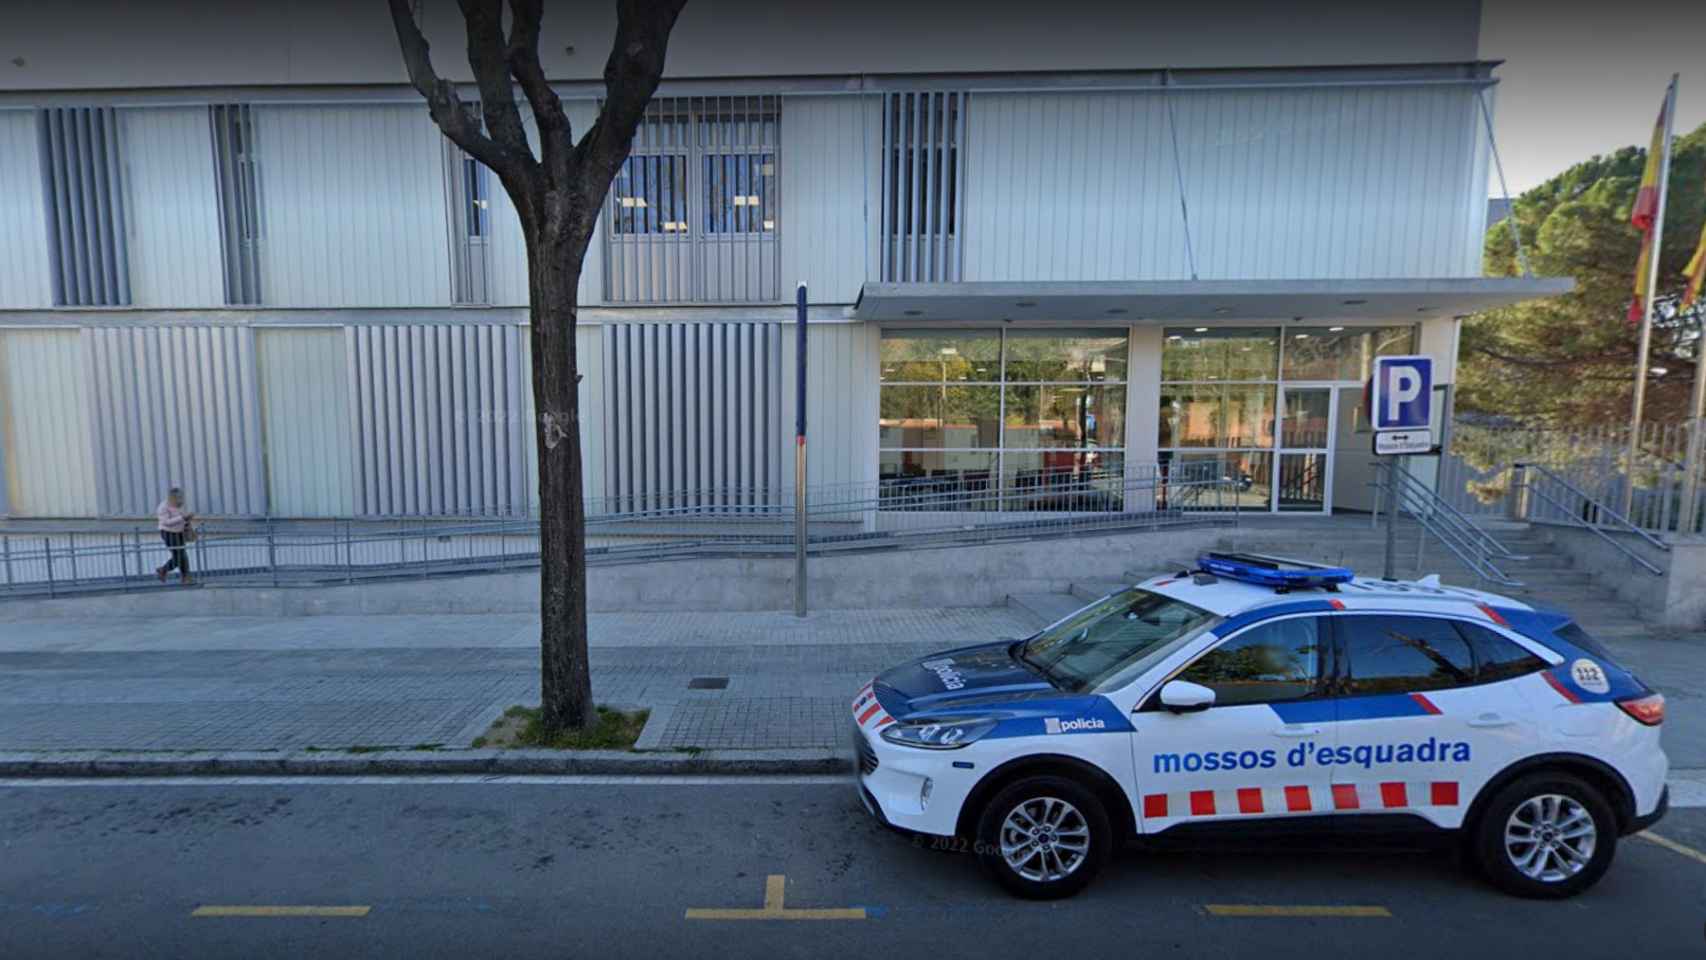 La comisaría de Sarrià-Sant Gervasi, en Barcelona, donde se ha producido un caso de suicidio de un mosso este lunes / GOOGLE STREET VIEW